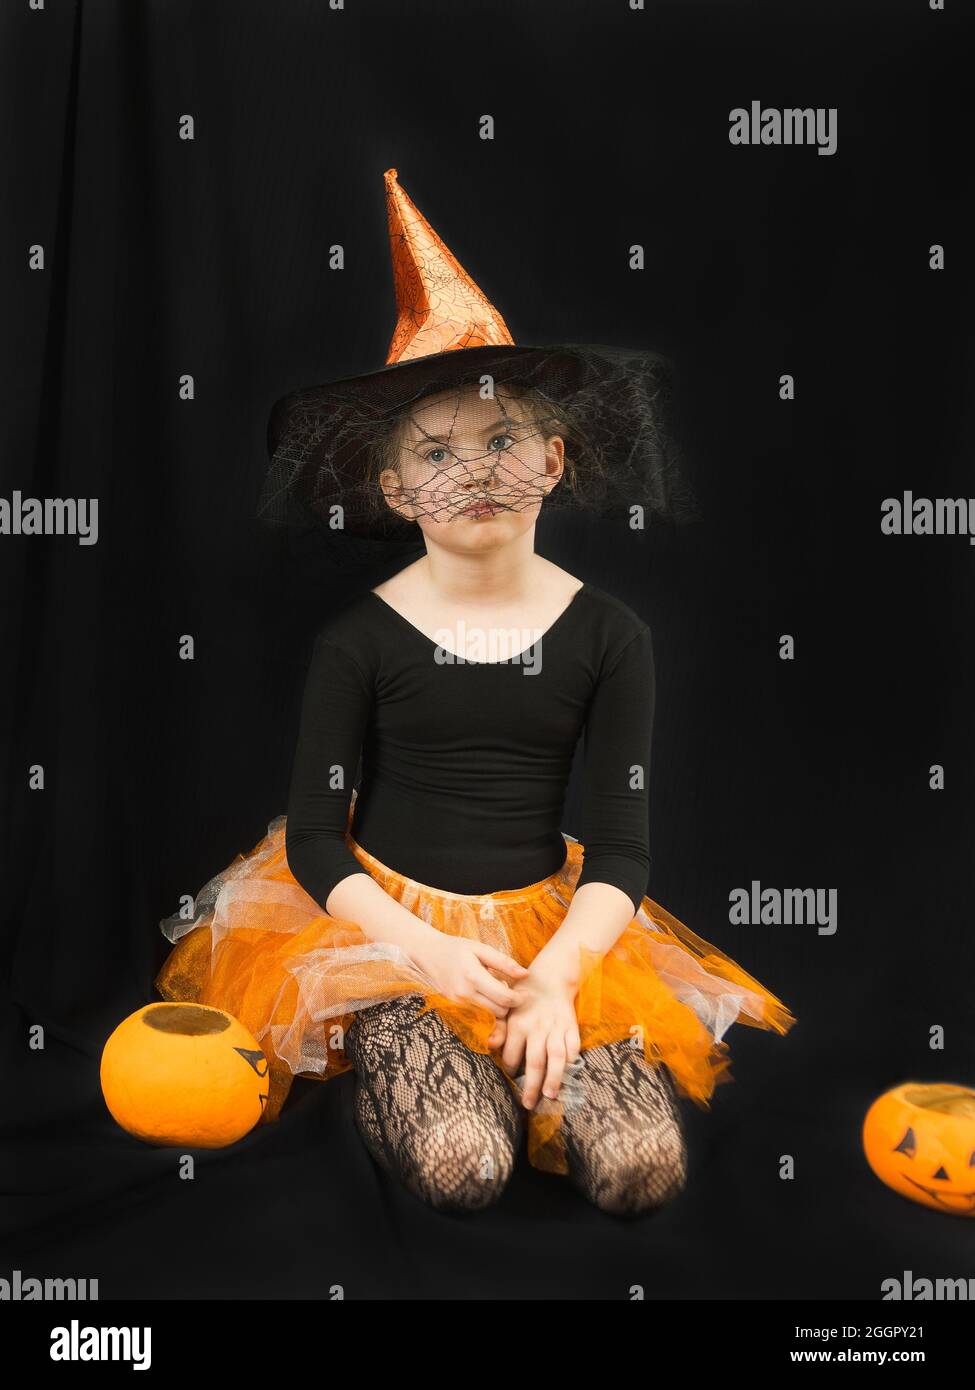 Une fille dans un costume de sorcière - un chapeau avec une toile  d'araignée et une jupe orange - se repose avec lassitude sur un fond noir.  À côté de lui est